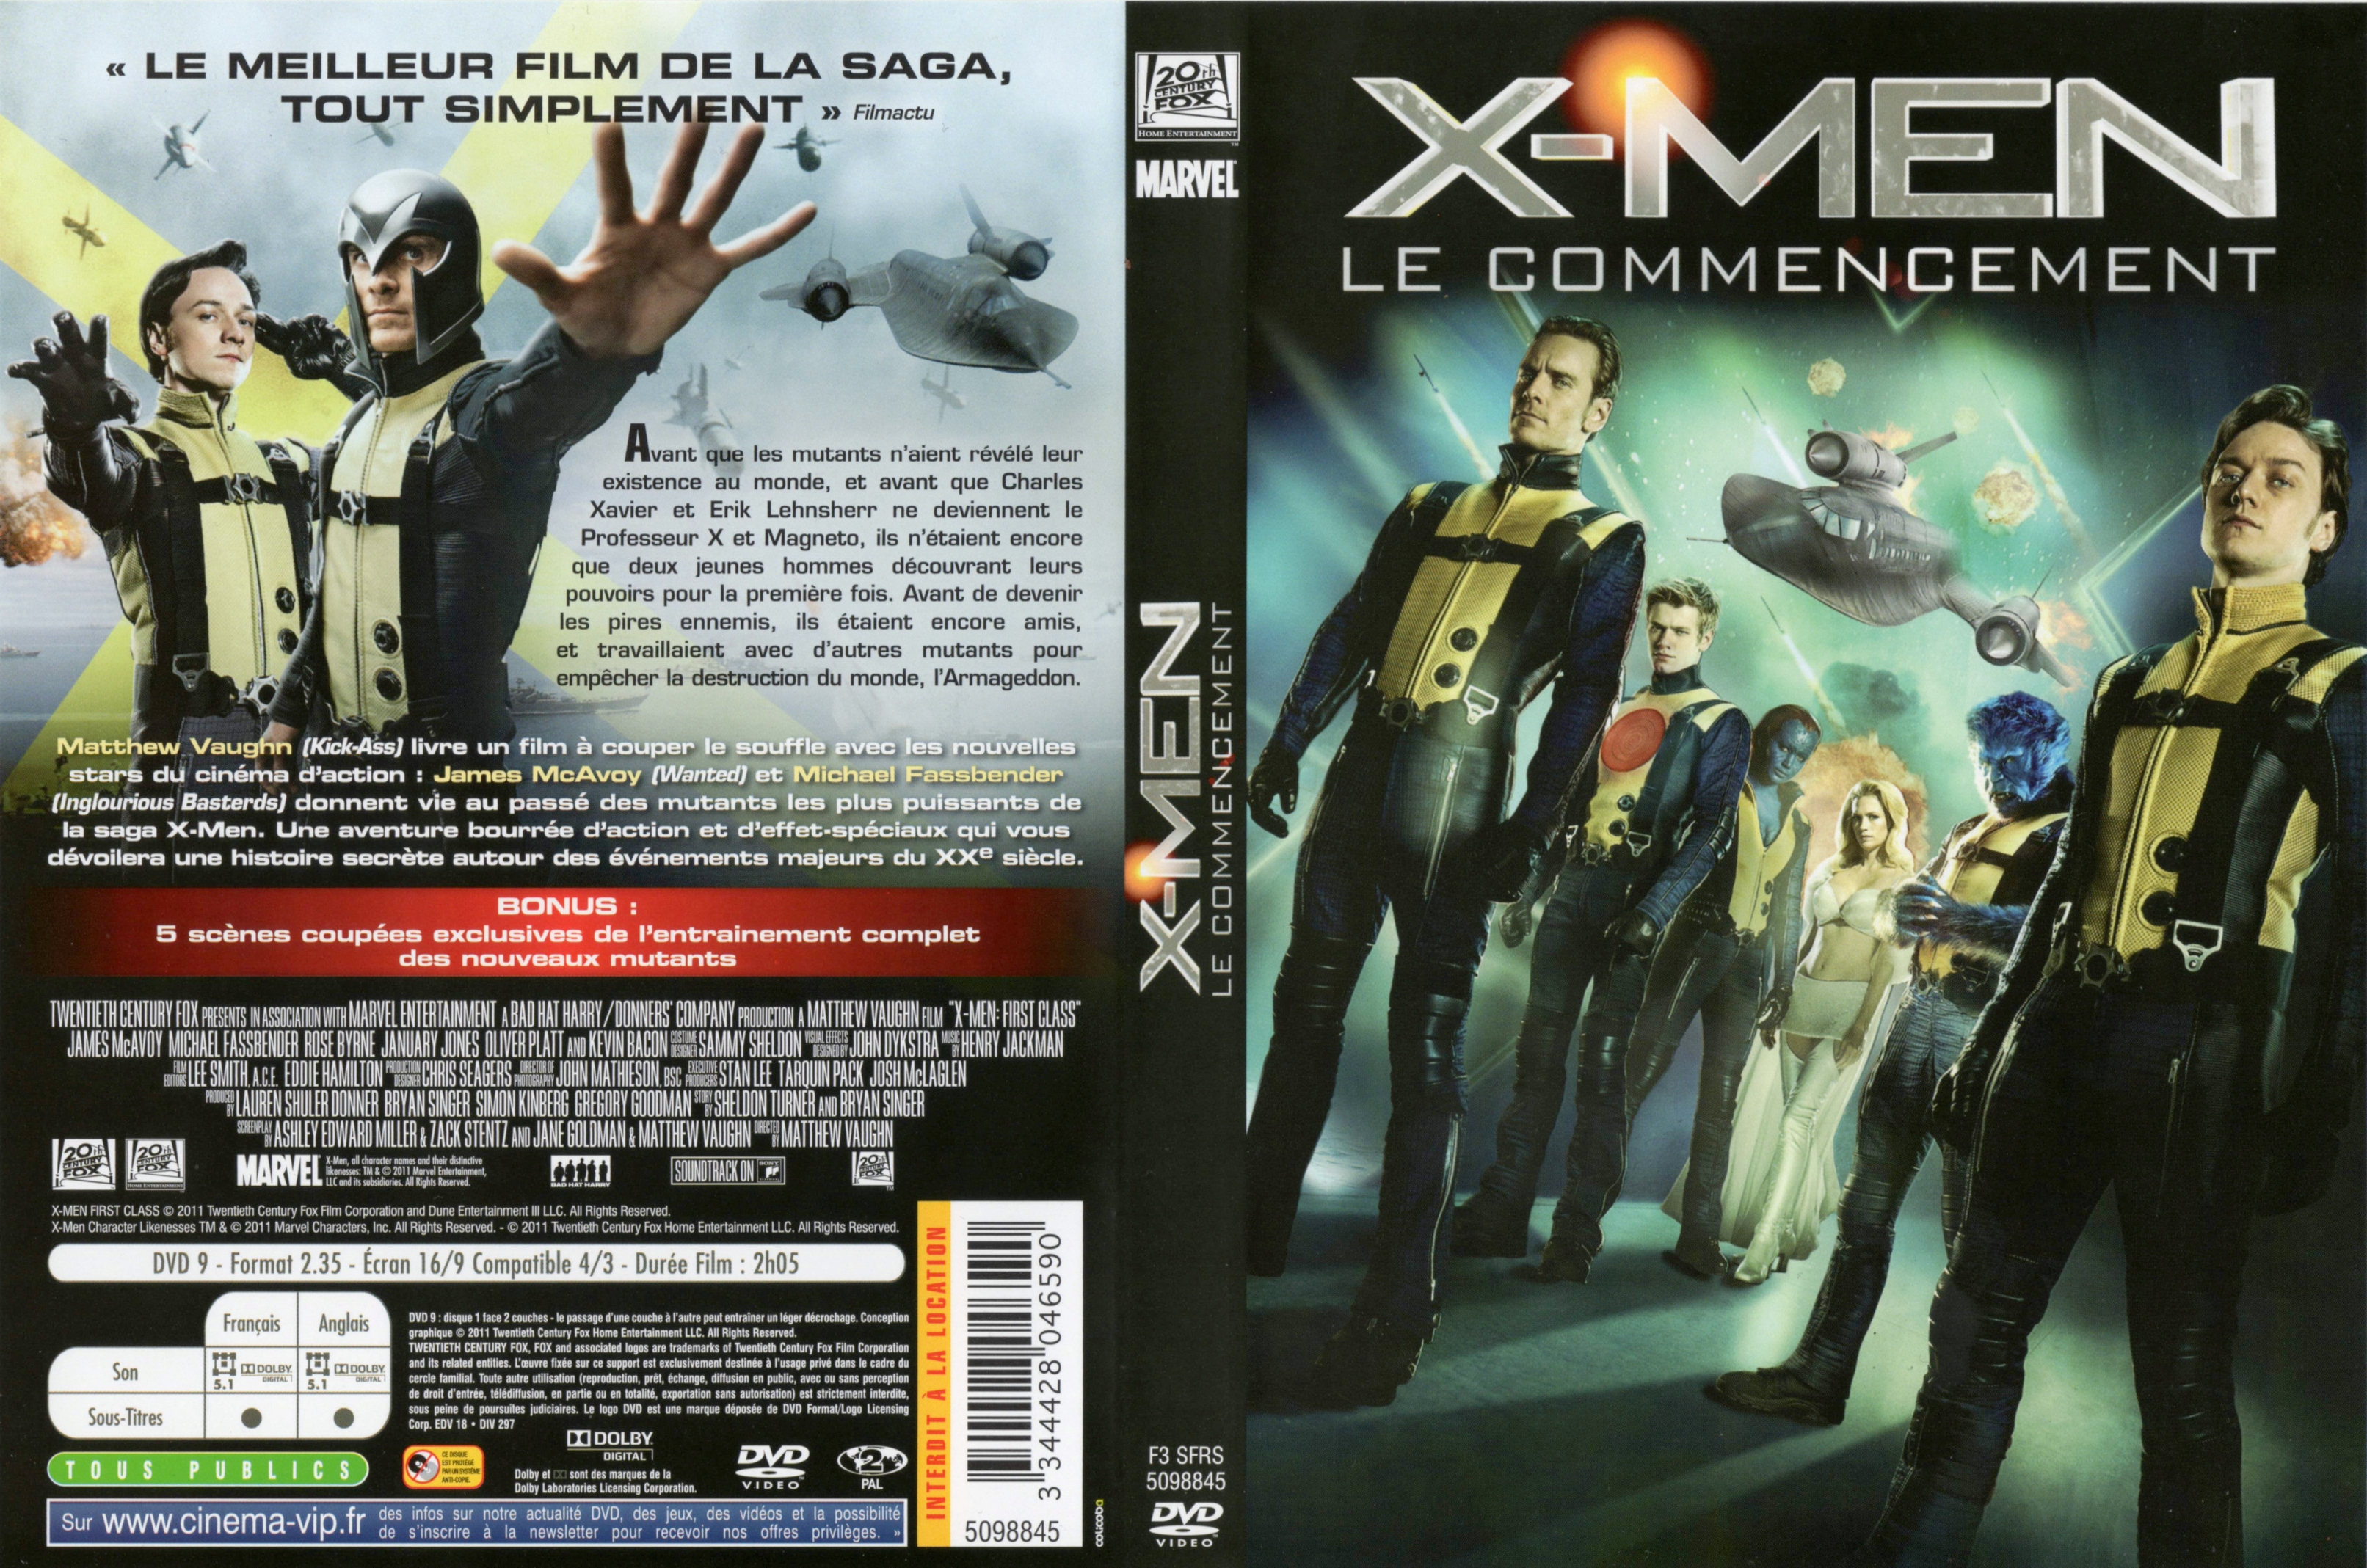 Jaquette DVD X-Men Le commencement v3